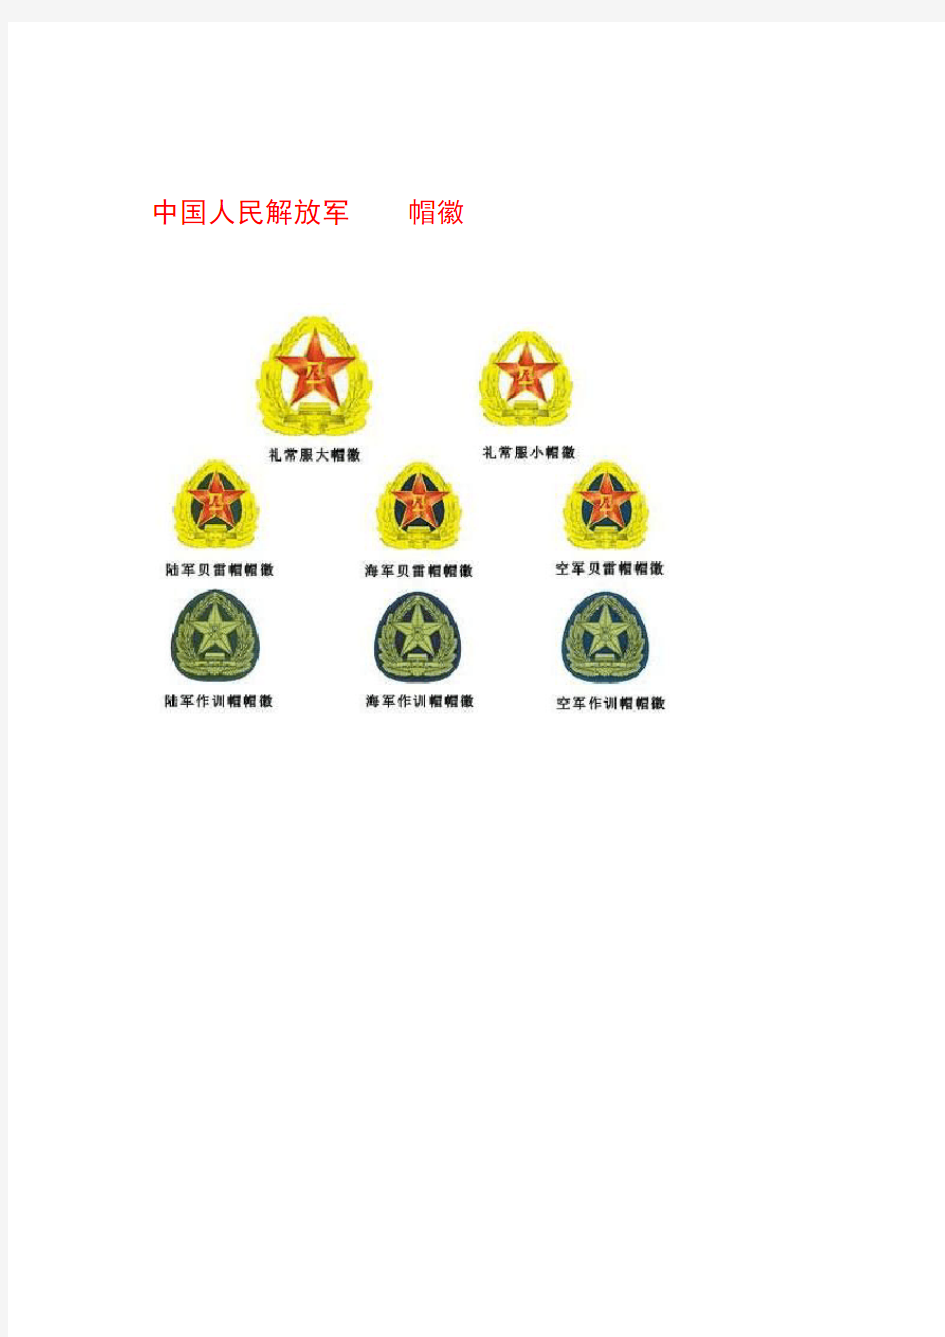 中国军队的军衔等级和肩章标志